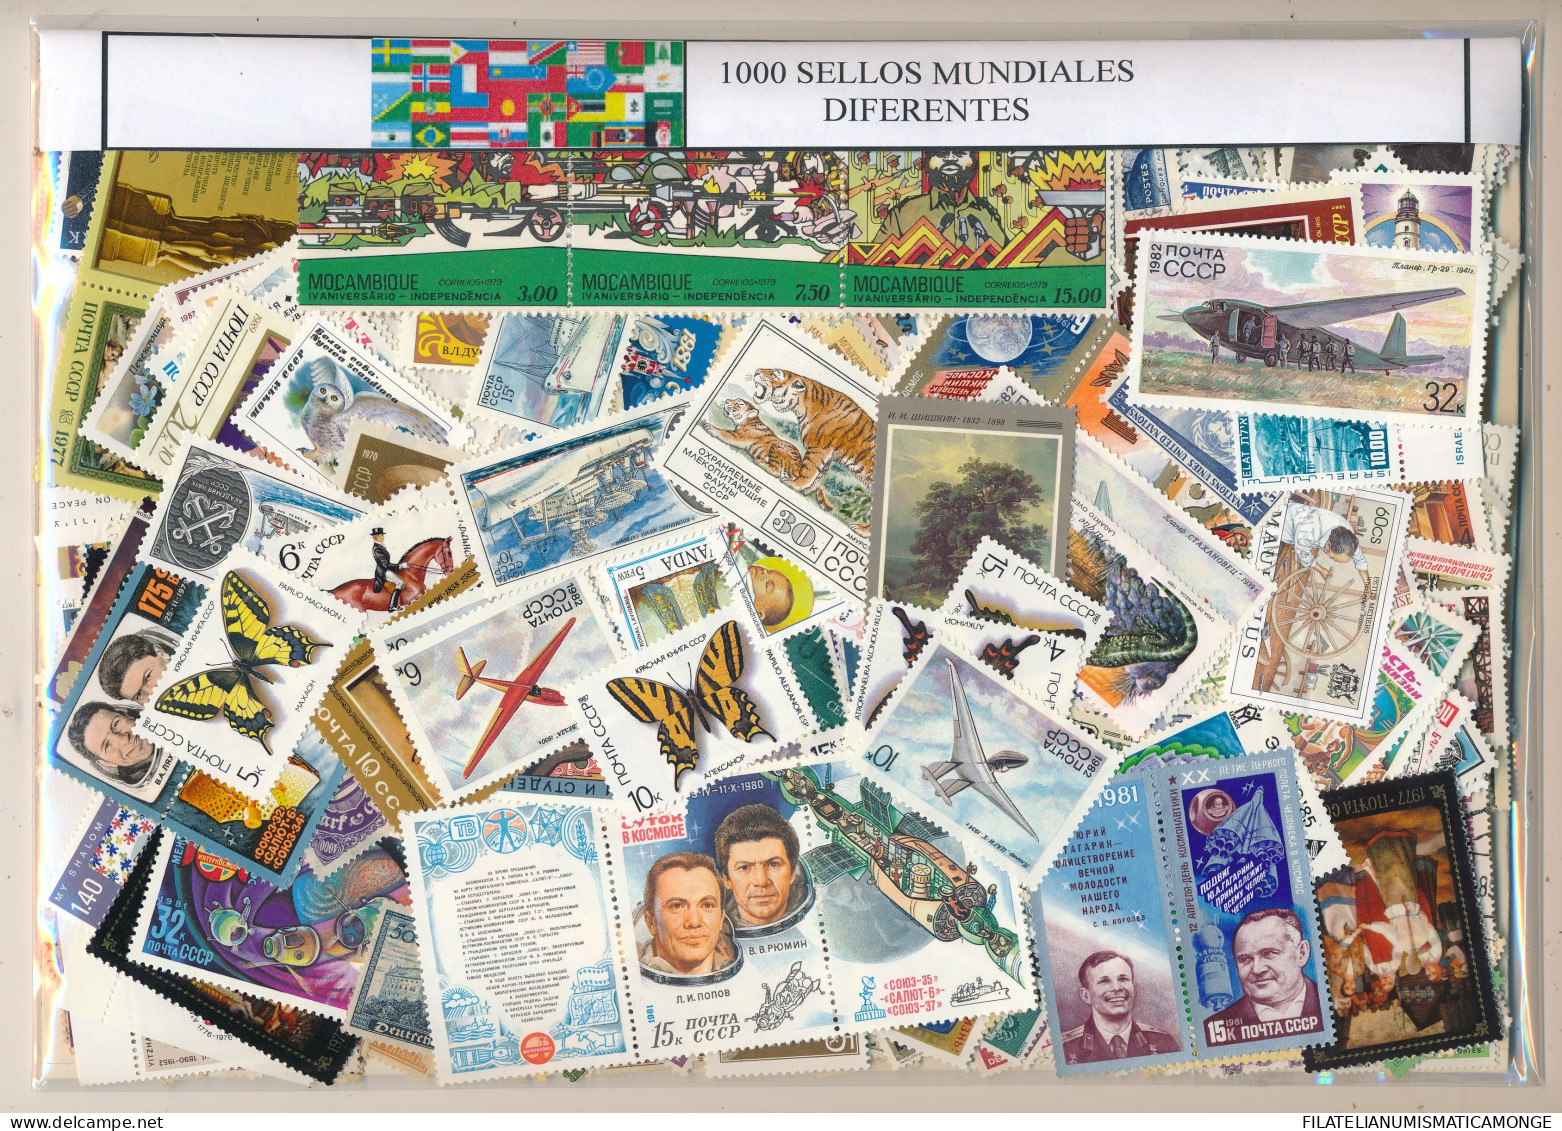  Offer - Lot Stamps - Paqueteria  Mundial 1000 Diferentes / Especial / Elegante - Kilowaar (min. 1000 Zegels)